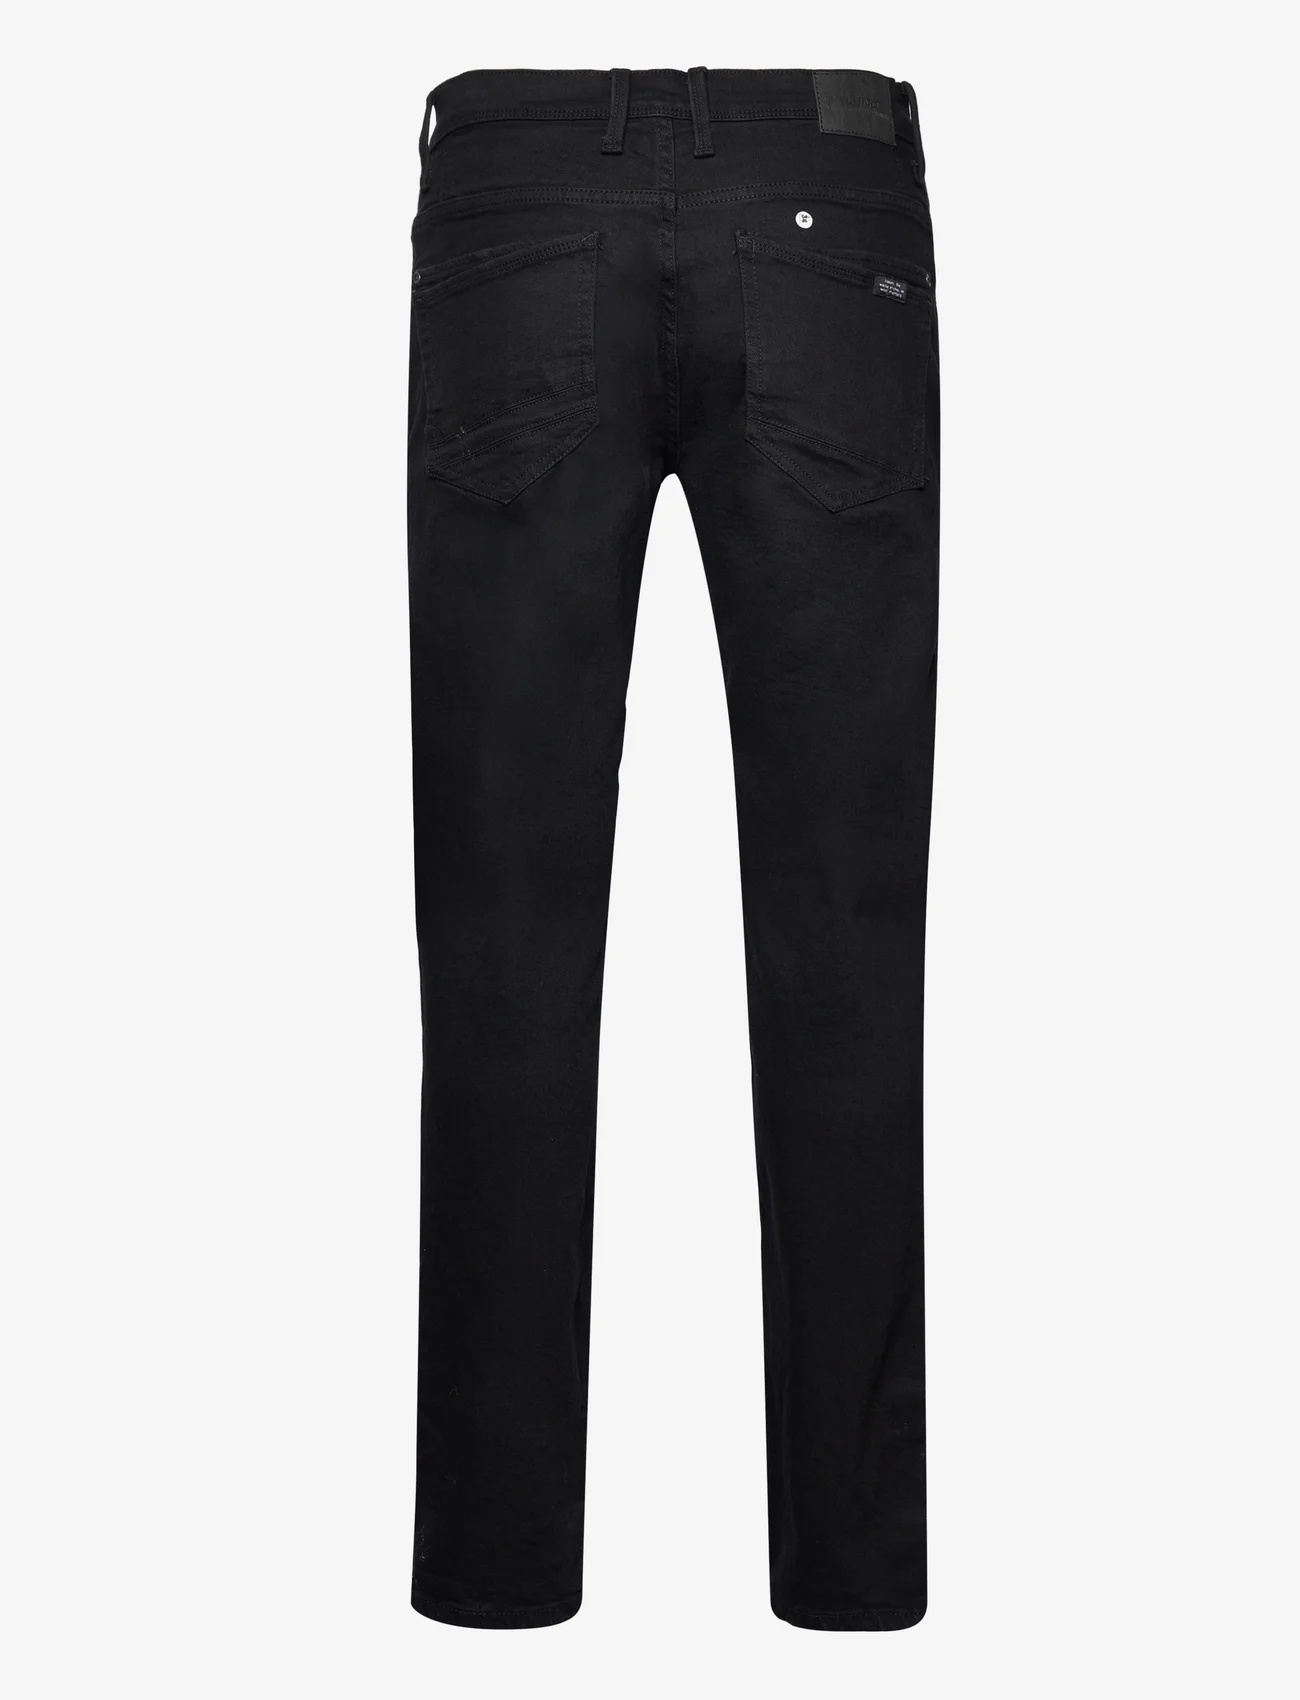 Blend - Rock fit - regular jeans - black - 1